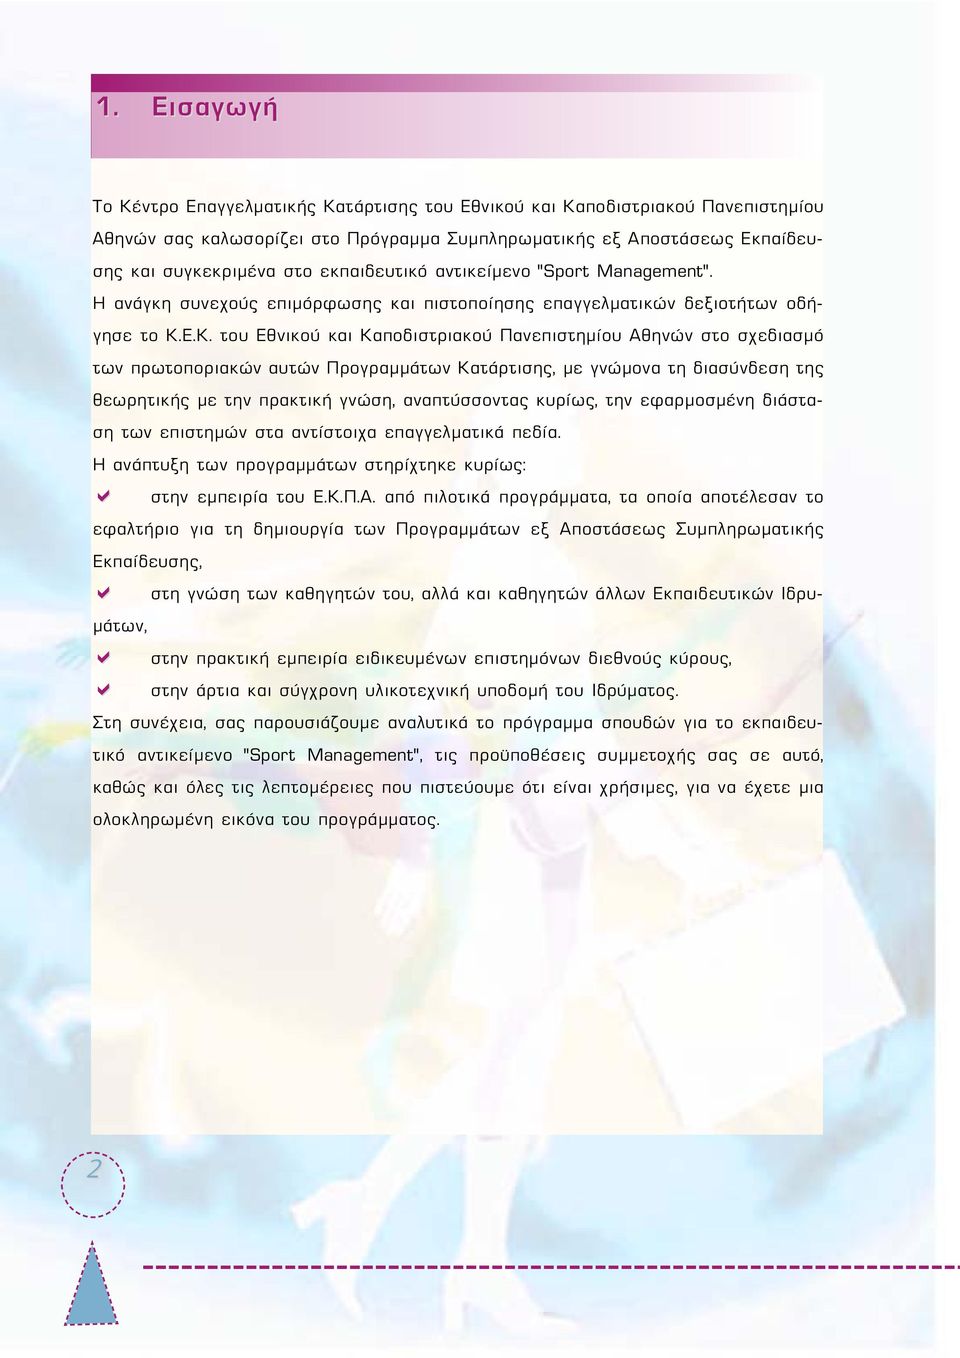 Ε.Κ. του Εθνικού και Καποδιστριακού Πανεπιστημίου Αθηνών στο σχεδιασμό των πρωτοποριακών αυτών Προγραμμάτων Κατάρτισης, με γνώμονα τη διασύνδεση της θεωρητικής με την πρακτική γνώση, αναπτύσσοντας